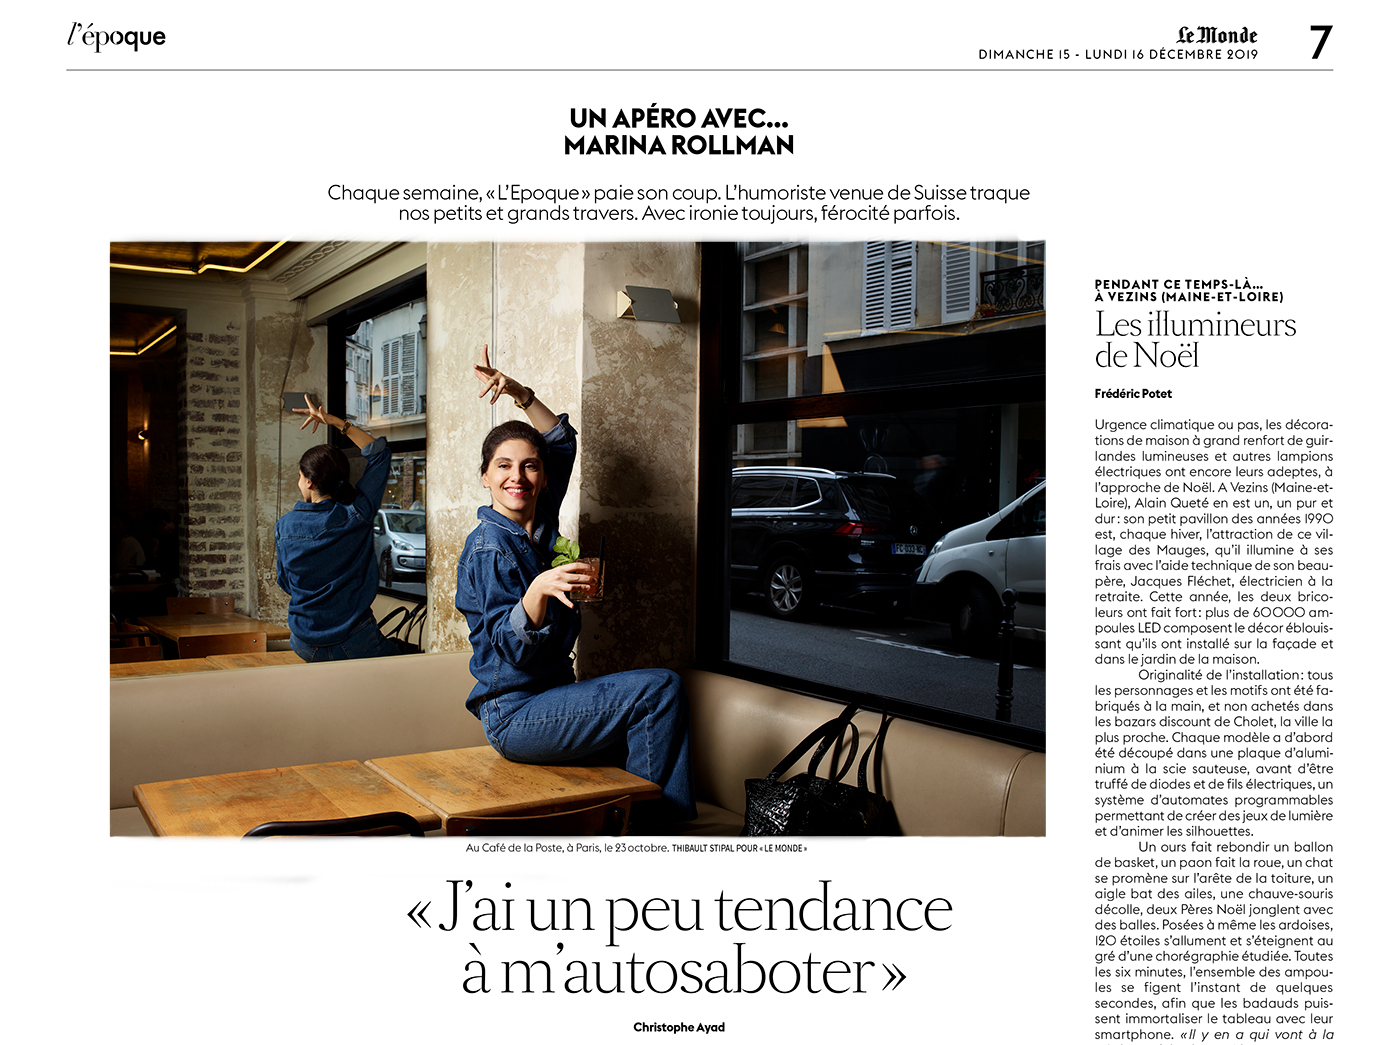 Thibault Stipal - Photographe - Le Monde - 1